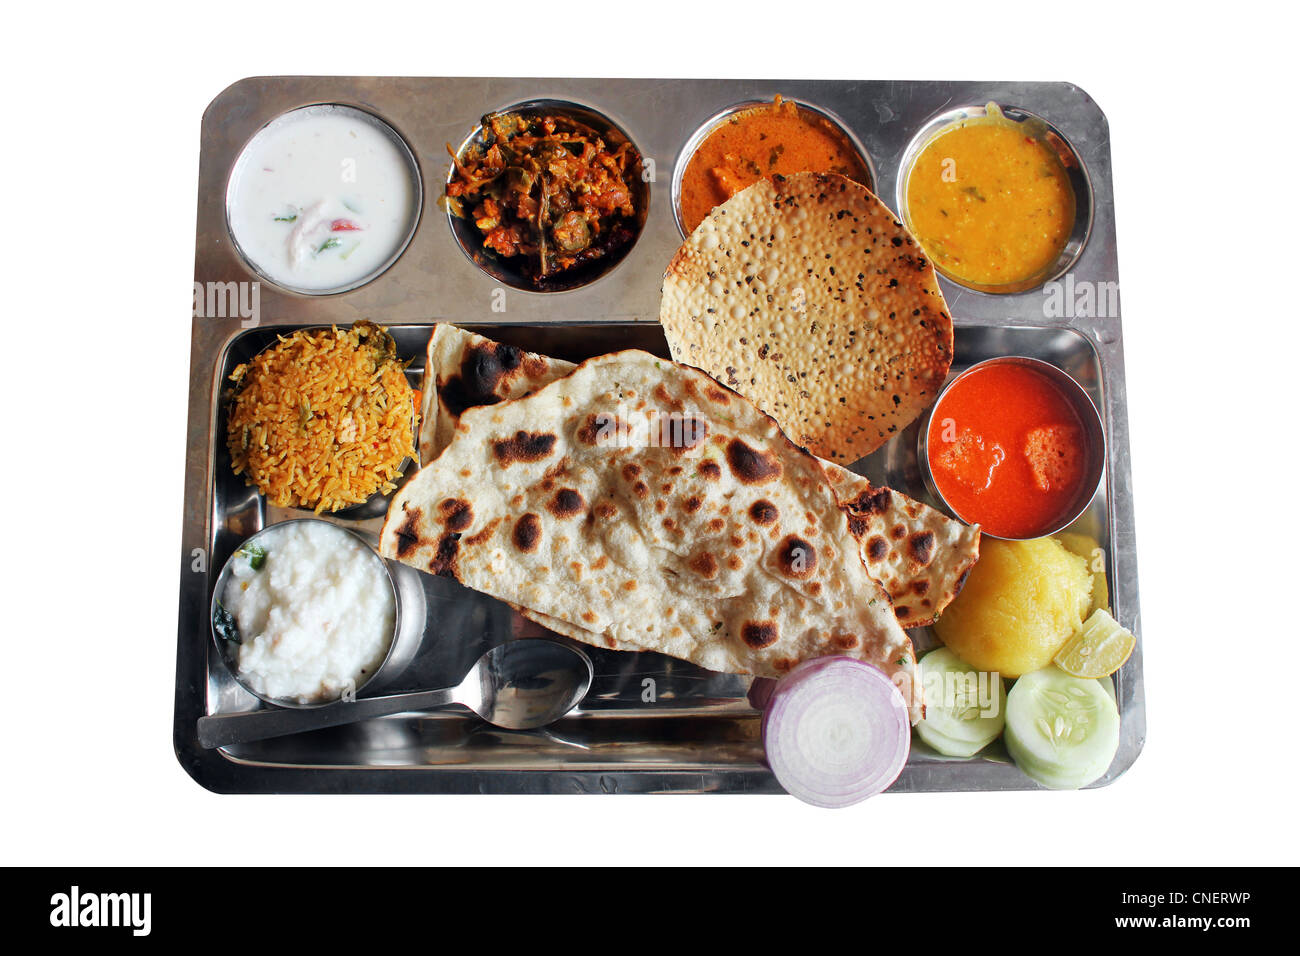 Placa del norte de la India tradicional comidas o almuerzo con roti, biryani, curry y sopa. Foto de stock